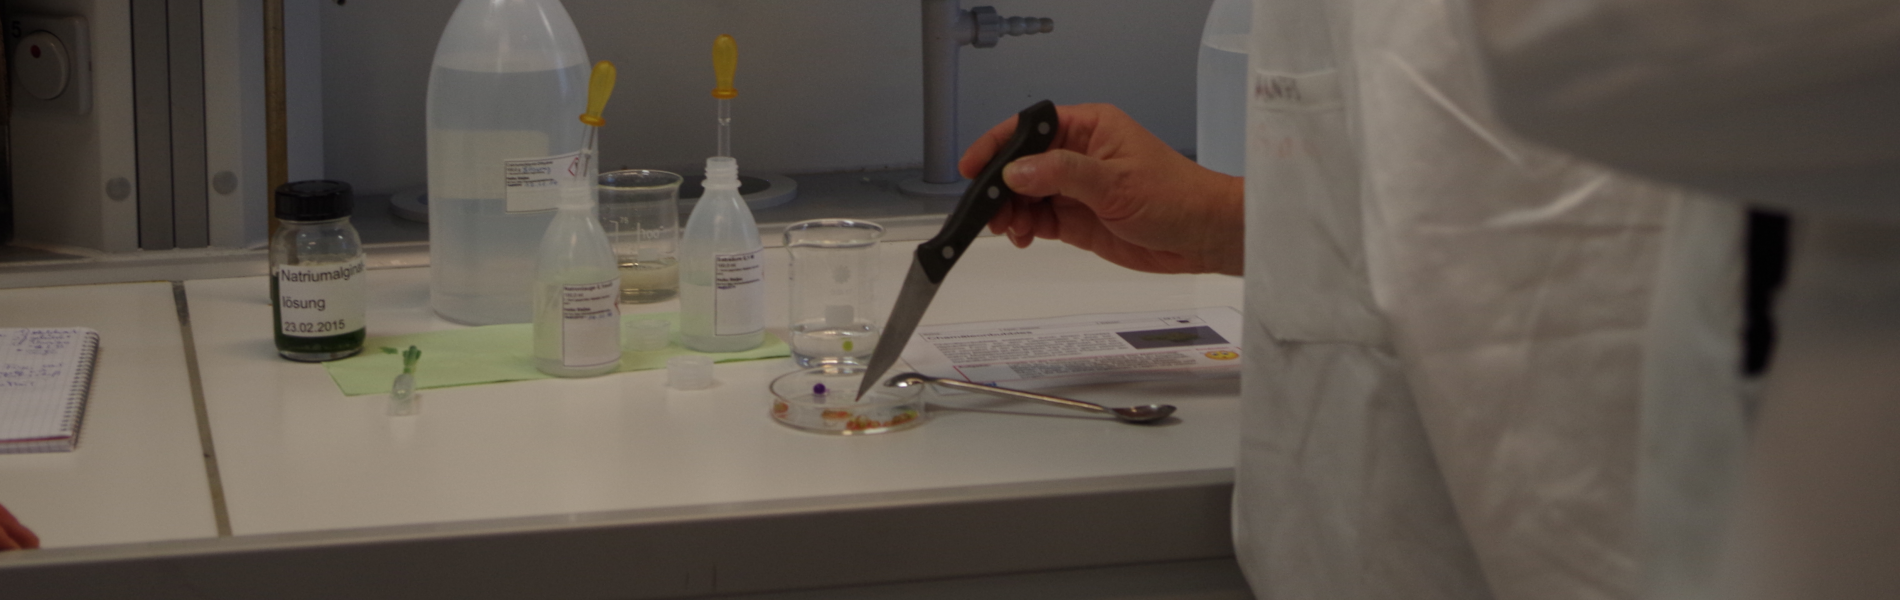 Eine Frau berührt mit einer Messerspitze den Inhalt eines Petriglases und trägt einen weißen Laborkittel dabei.